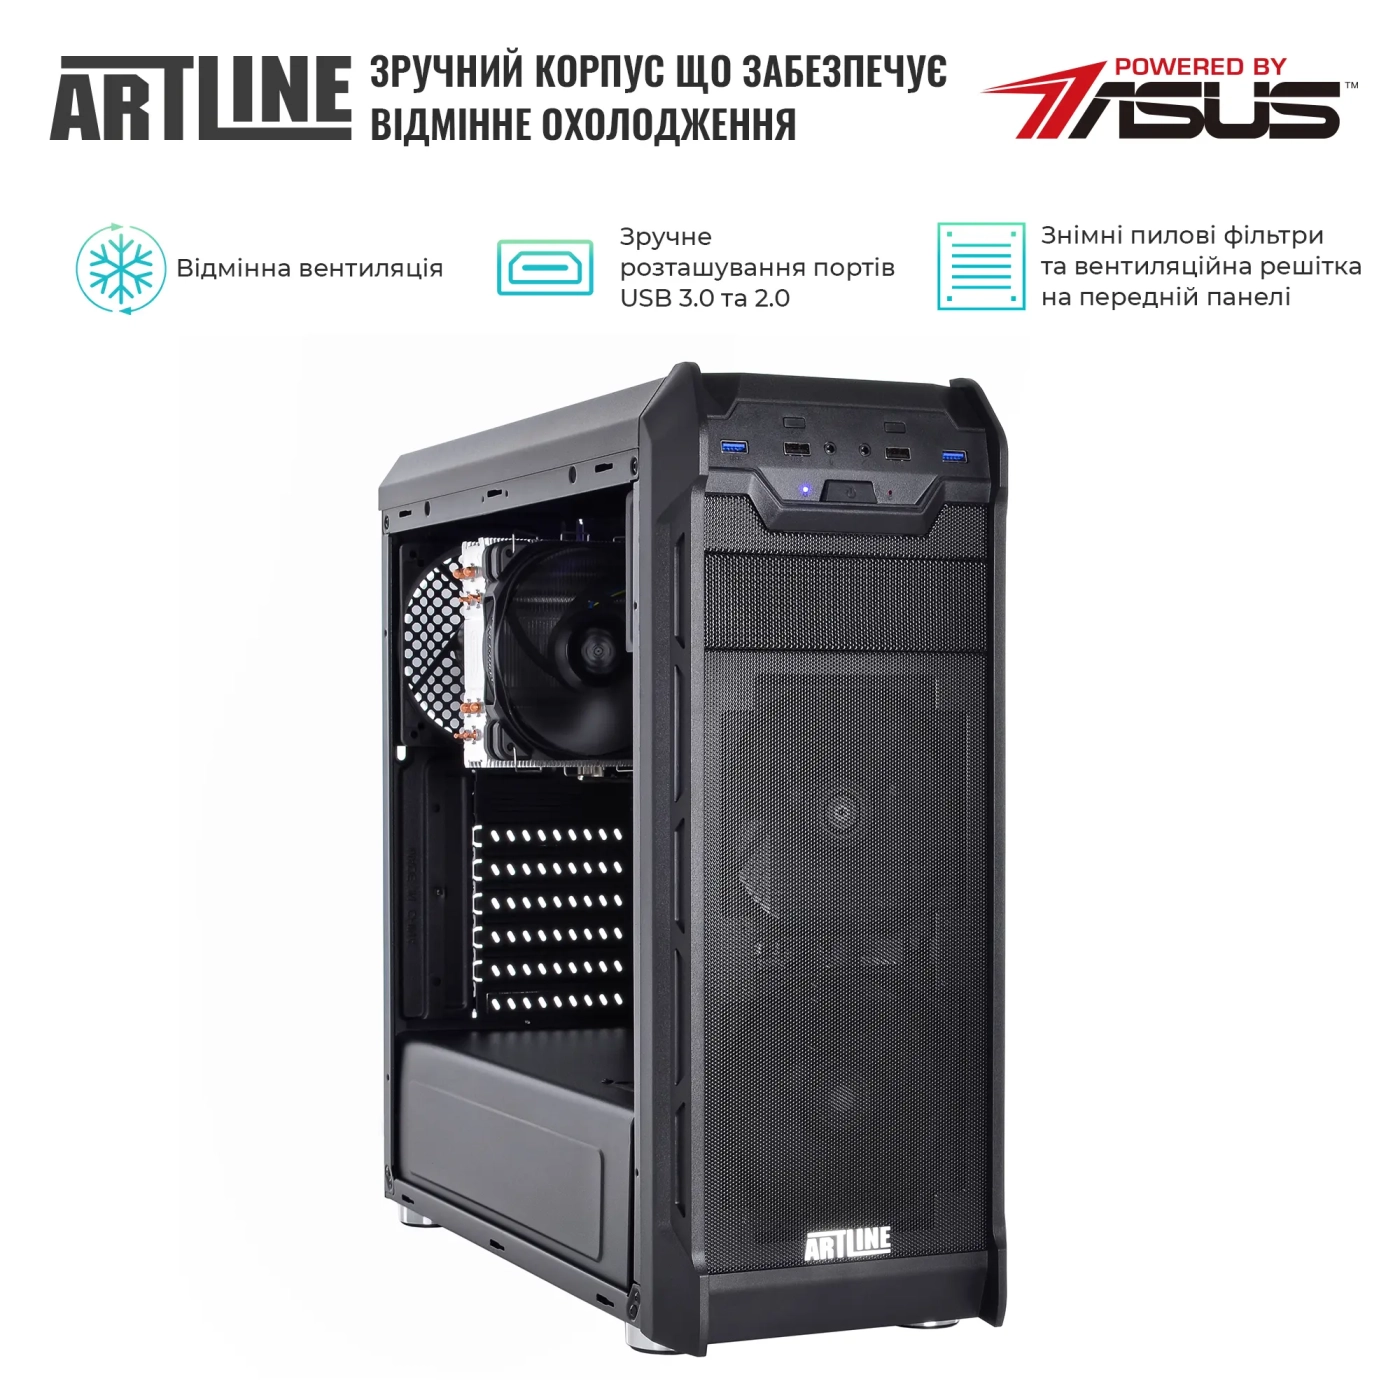 Купить Сервер ARTLINE Business T27 (T27v33) - фото 3